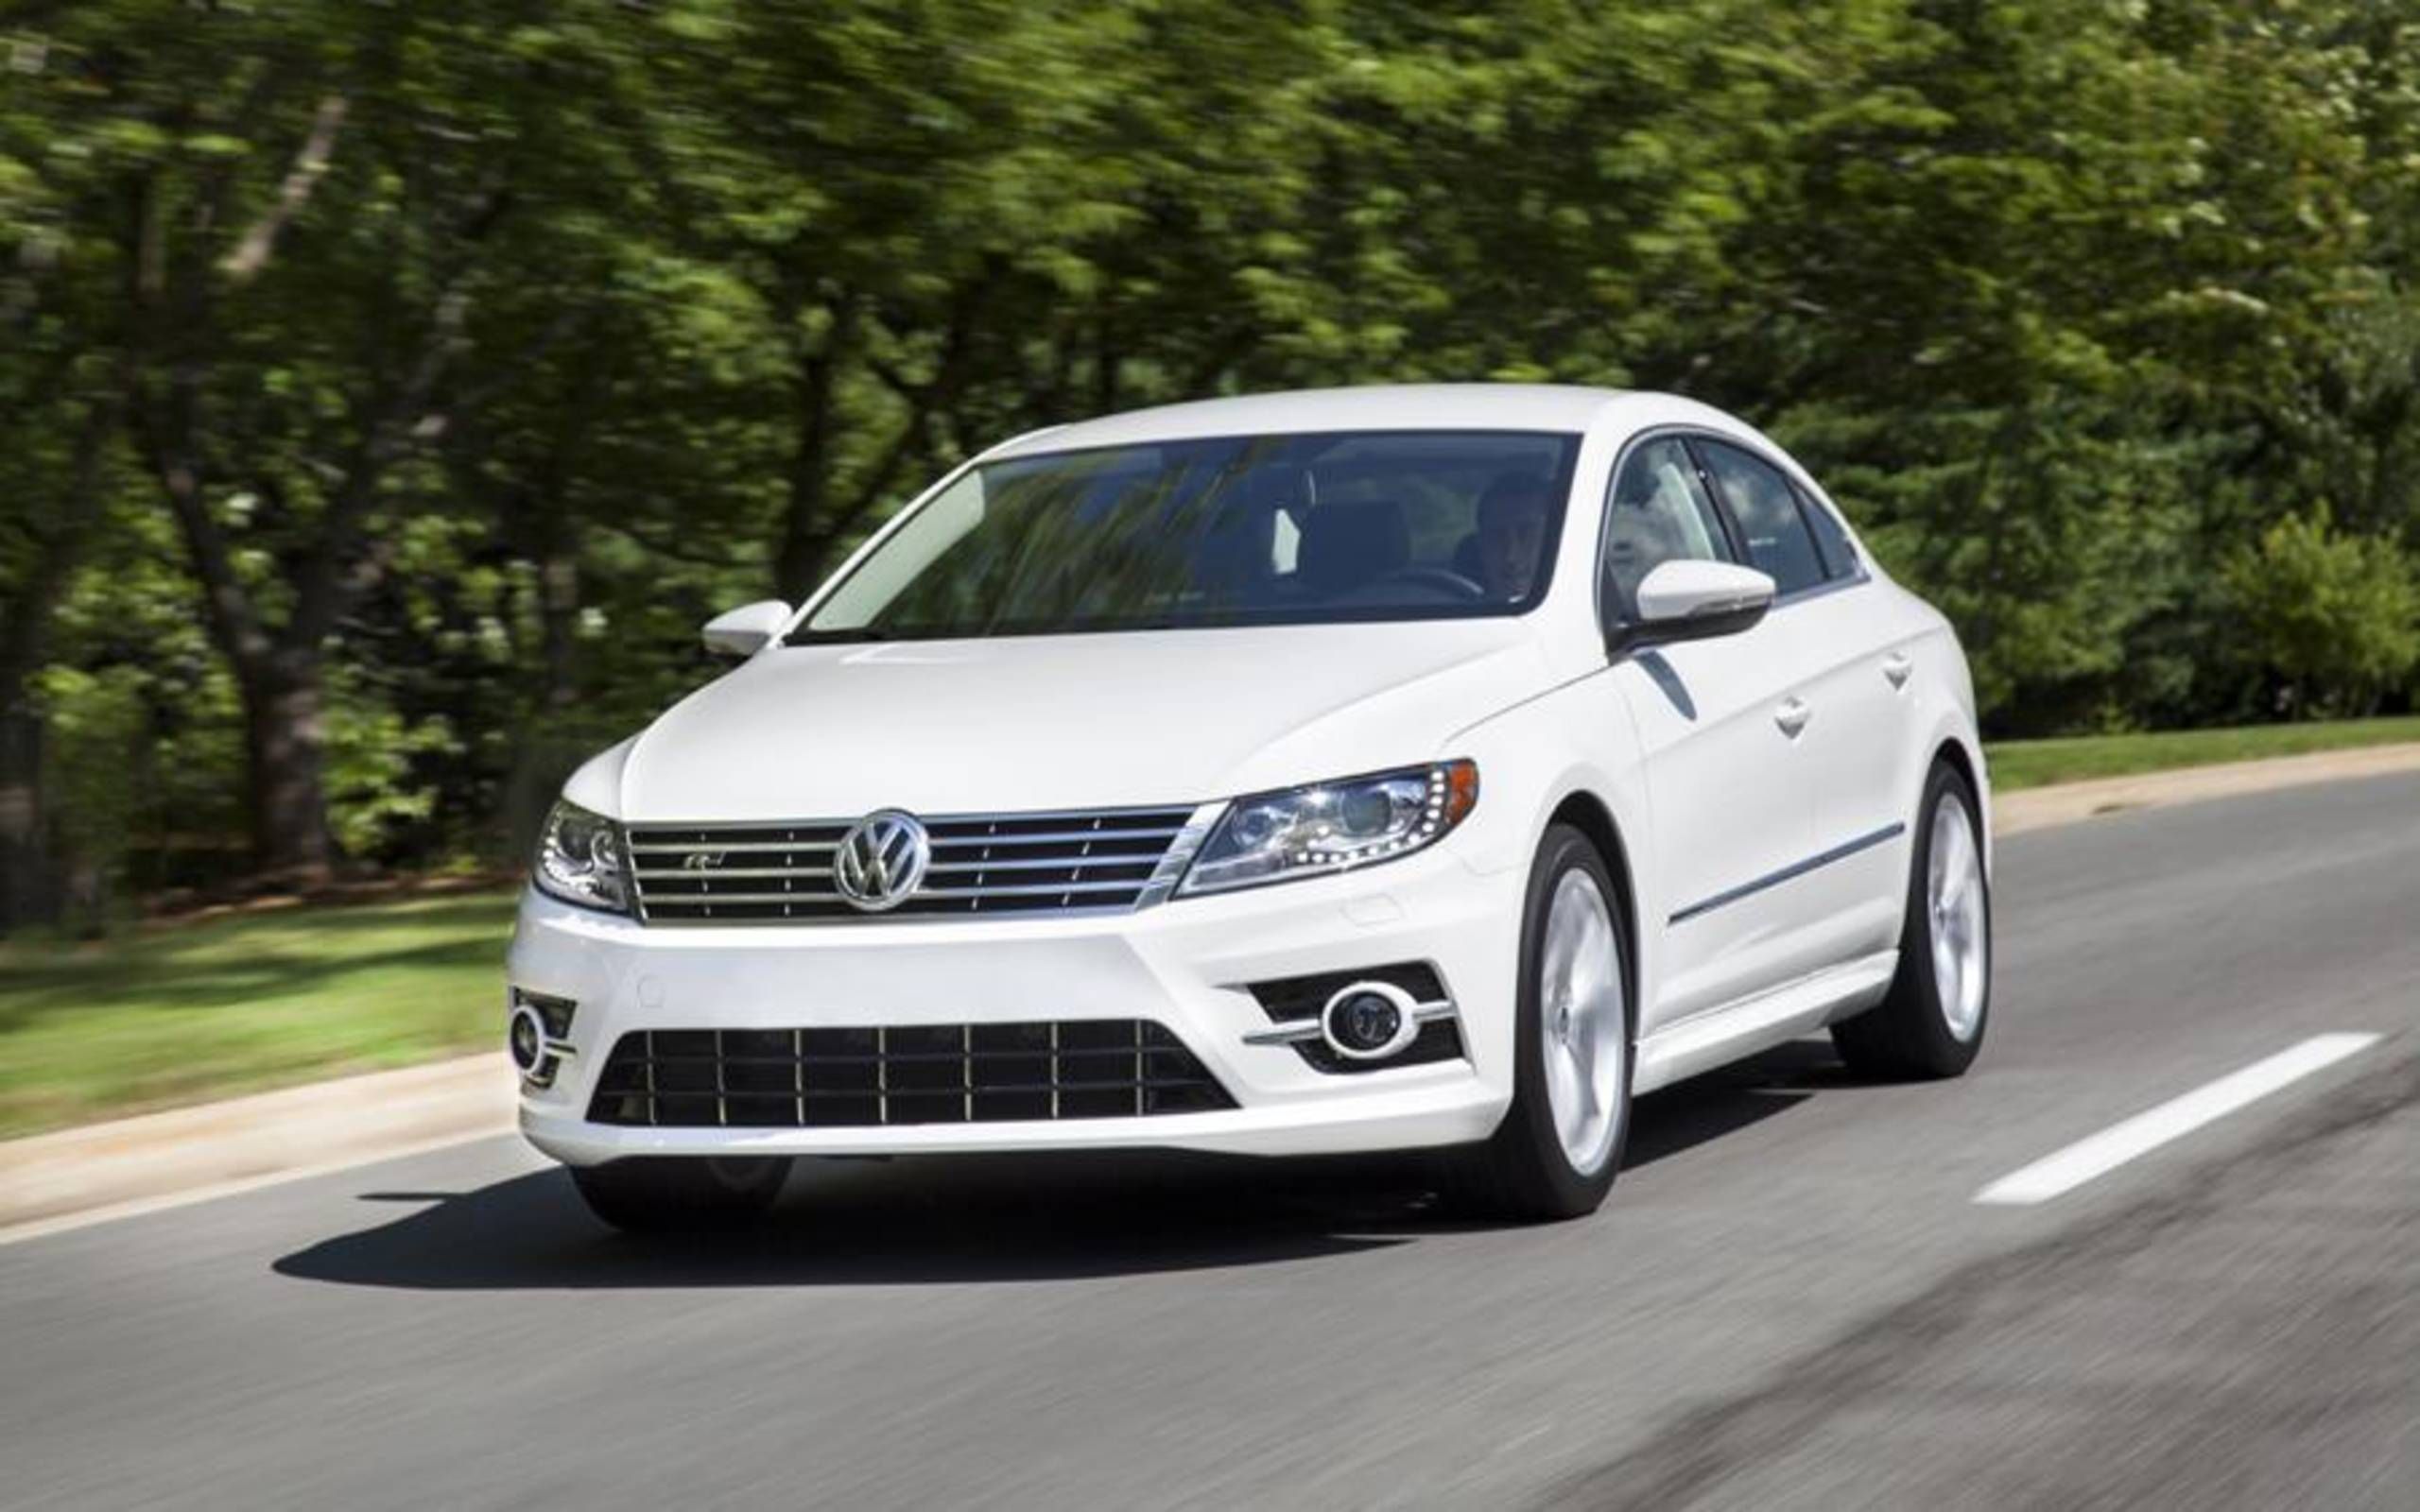 2014 Volkswagen Passat Sport review notes